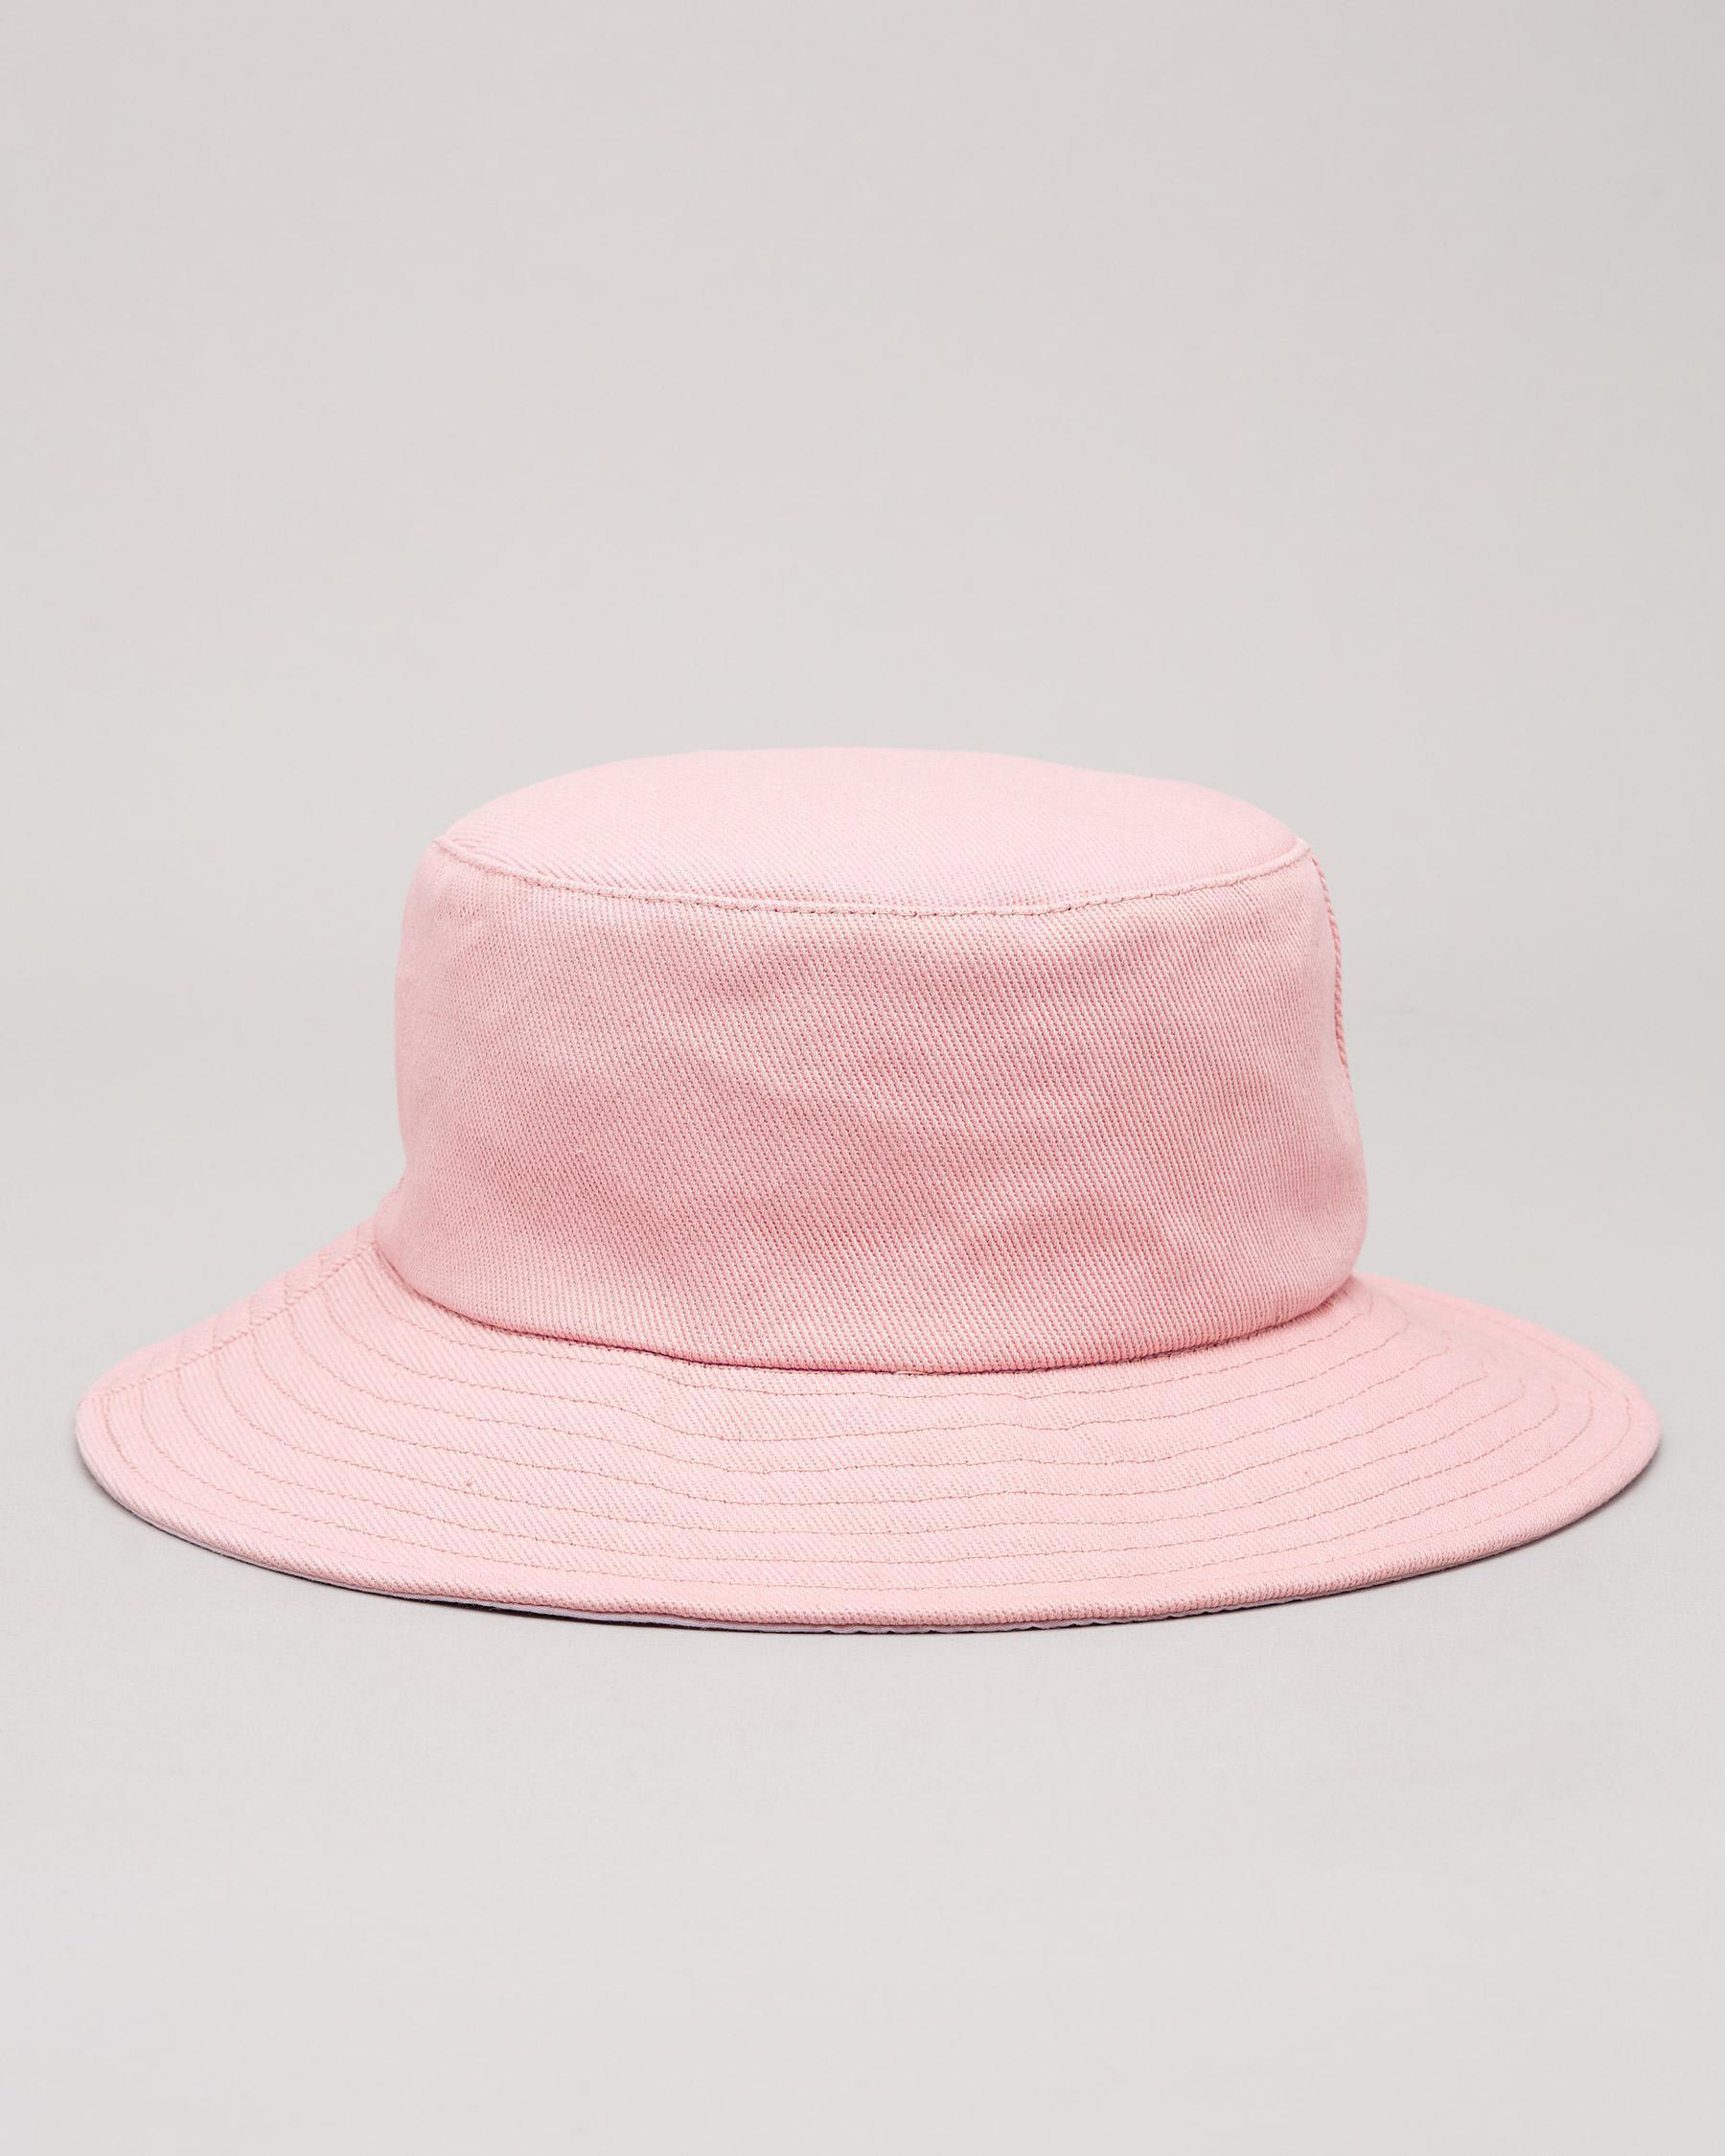 Mooloola Girls' Monica Bucket Hat In Dusty Pink - Fast Shipping & Easy ...